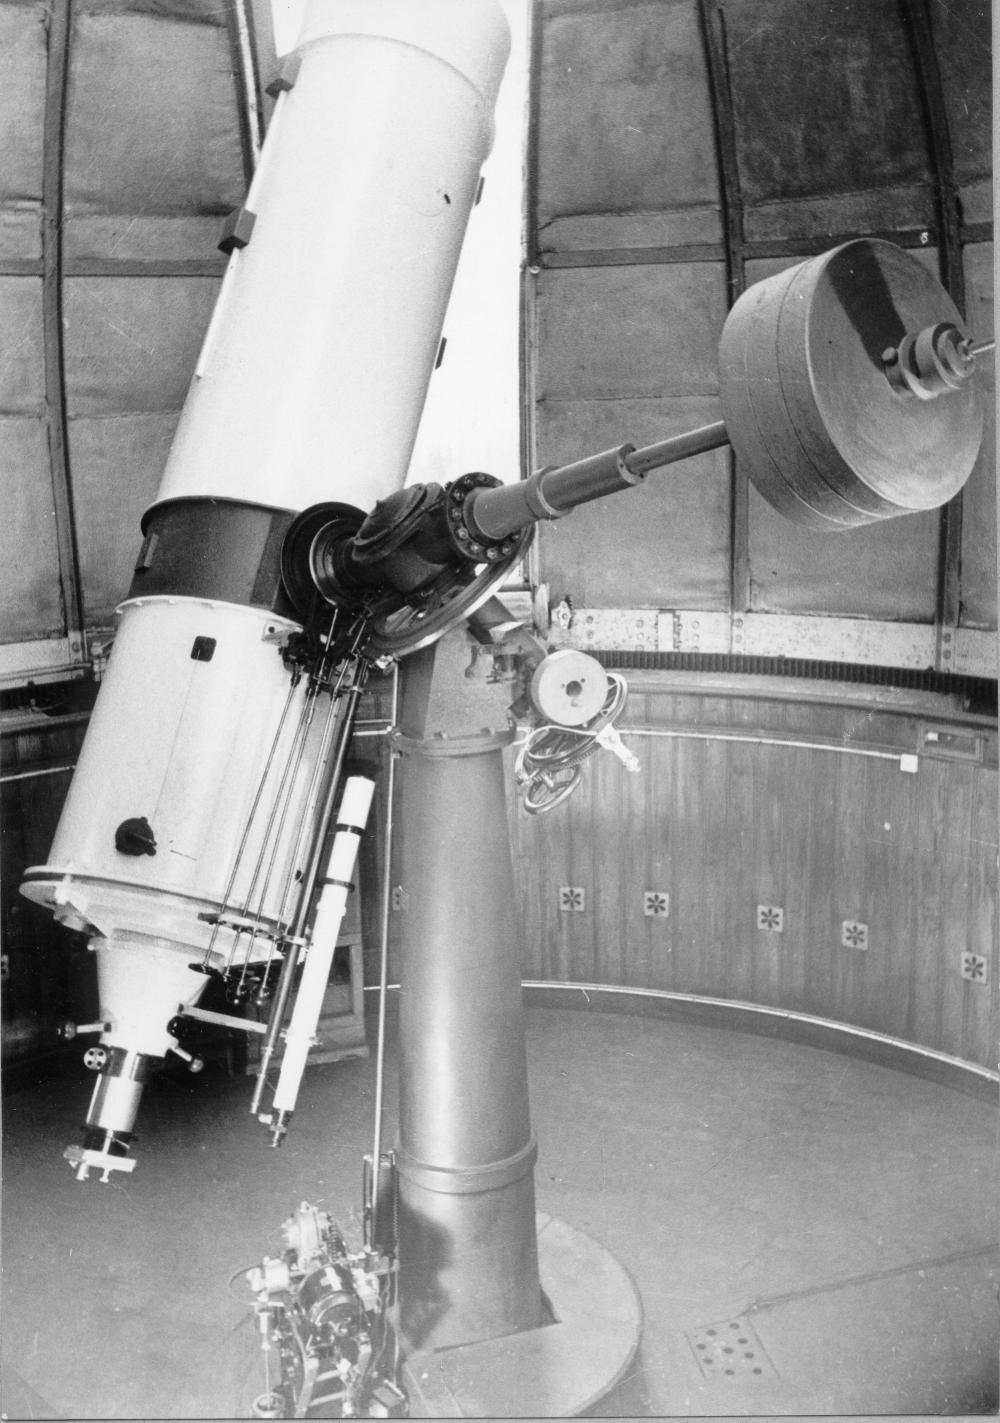 60-cm-Reflecting telescope (1946) (Image courtesy: